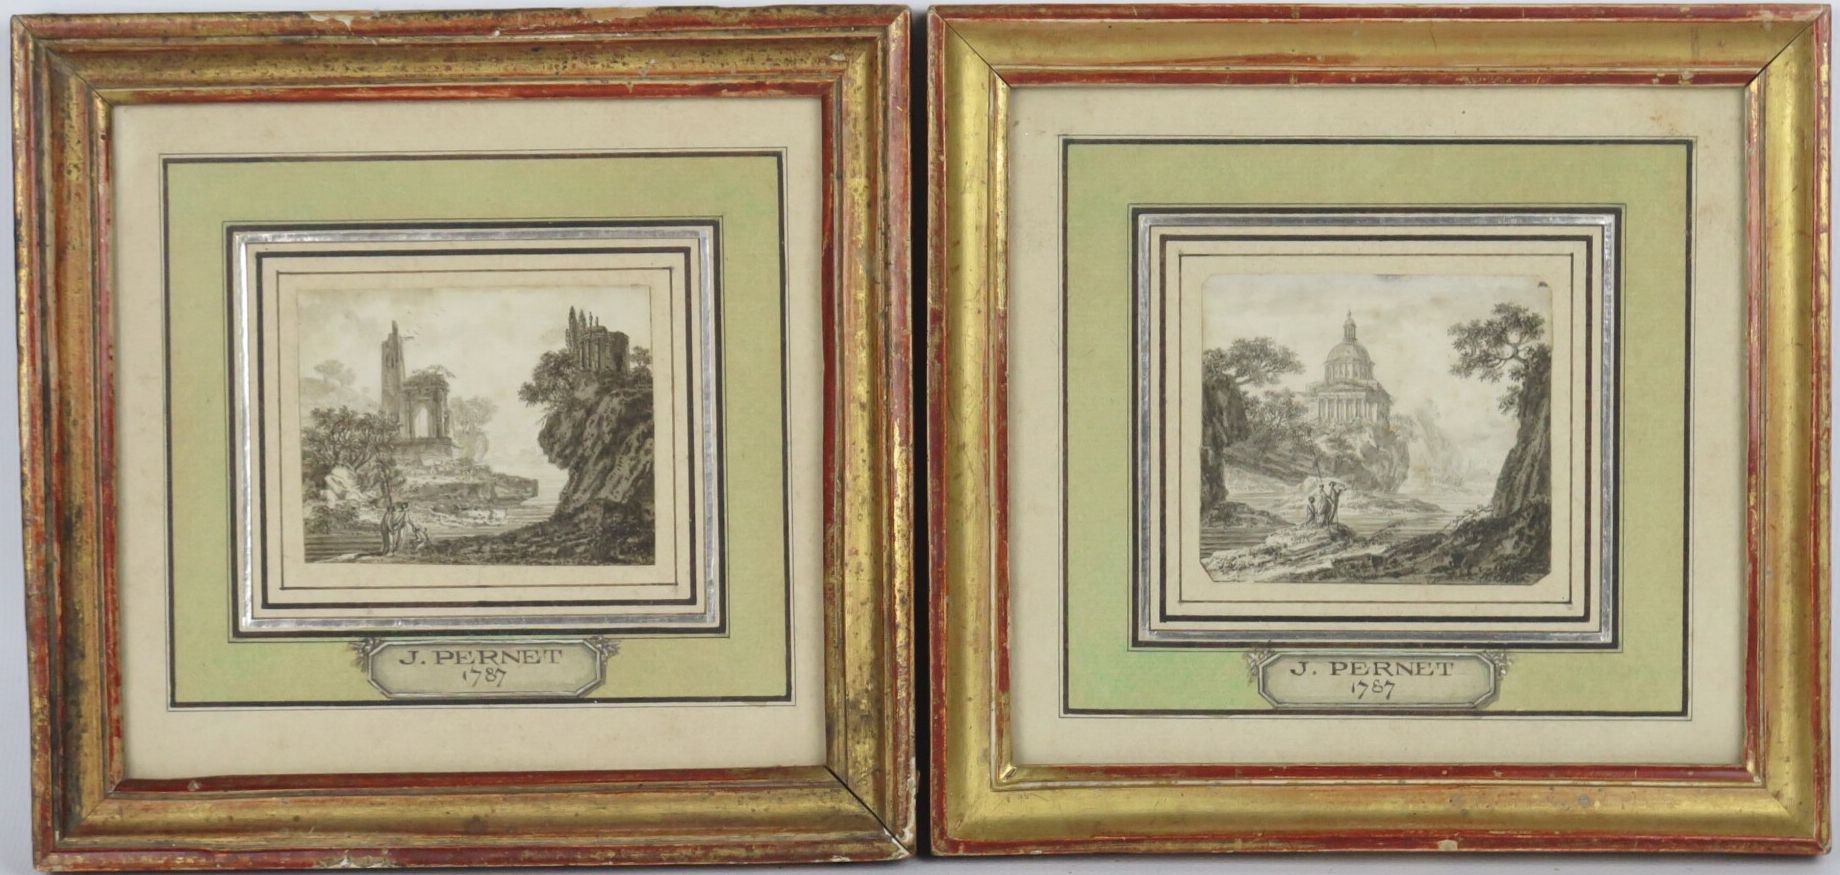 Null 十八世纪的法国学校。

一对生动的古董风景画。

墨水和水墨。

注释了J. Pernet 1787年的插图。

高_6,5厘米L_7,5厘米左右